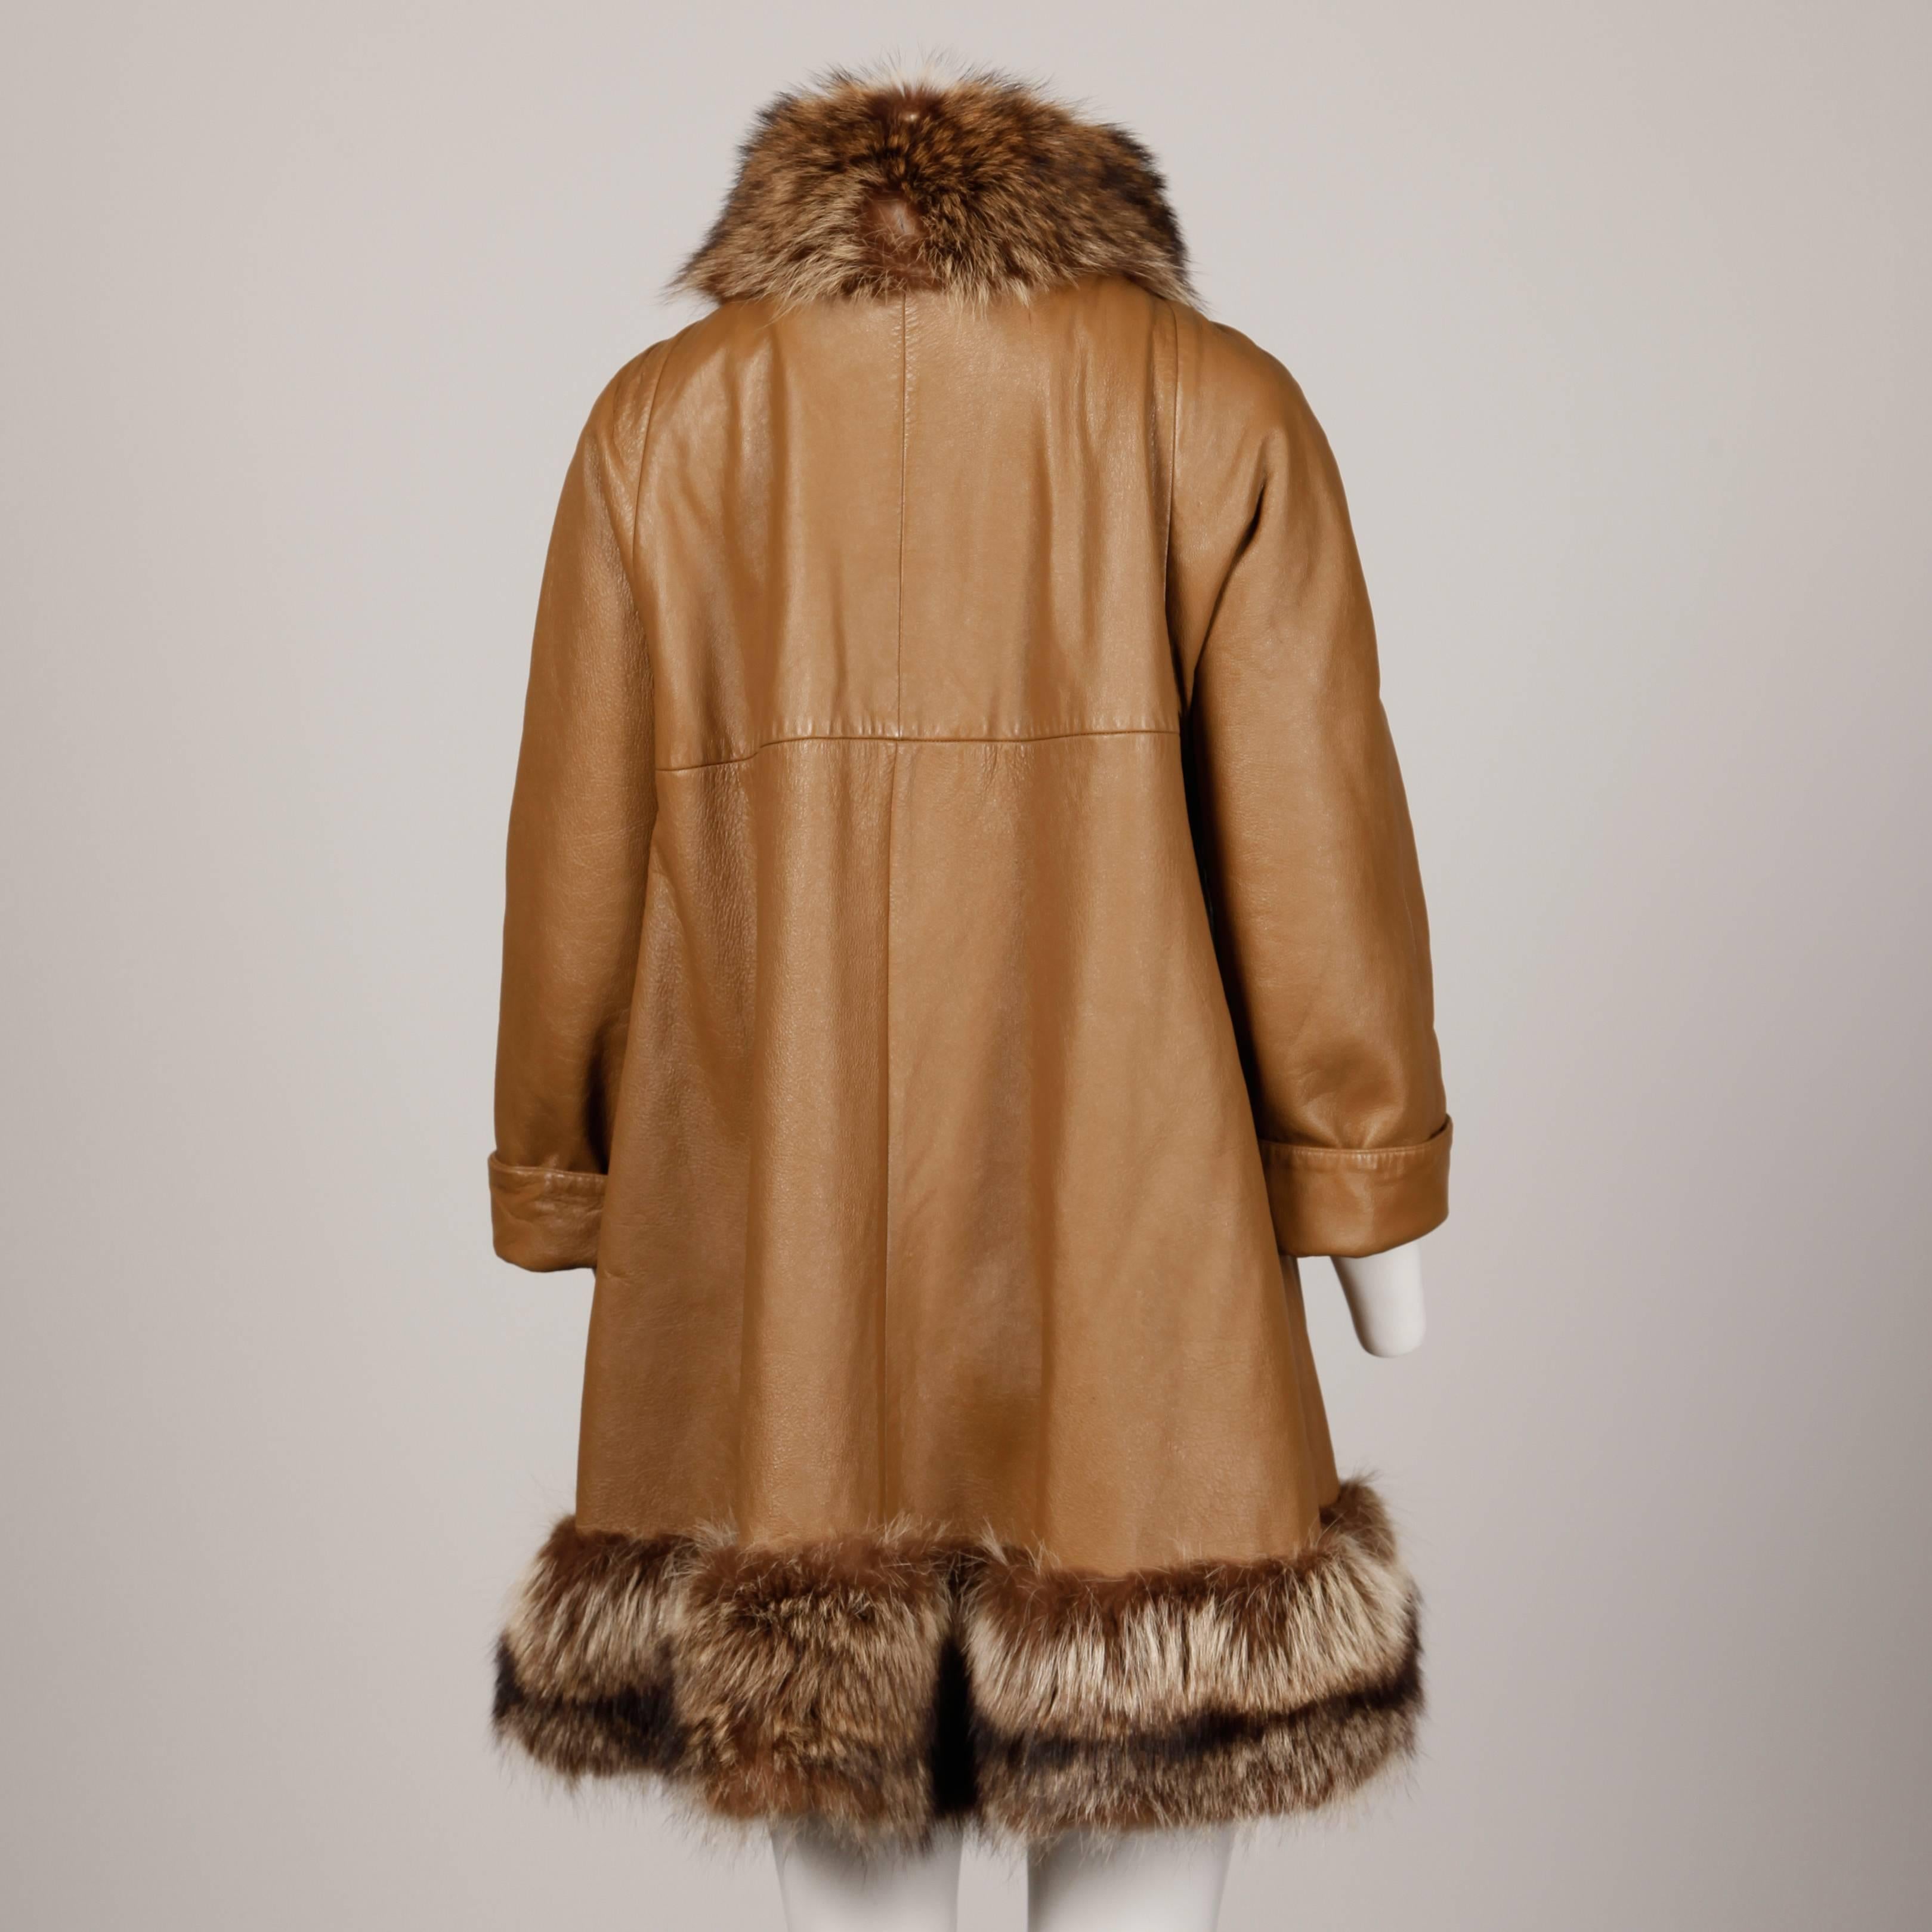 60s coat with fur trim